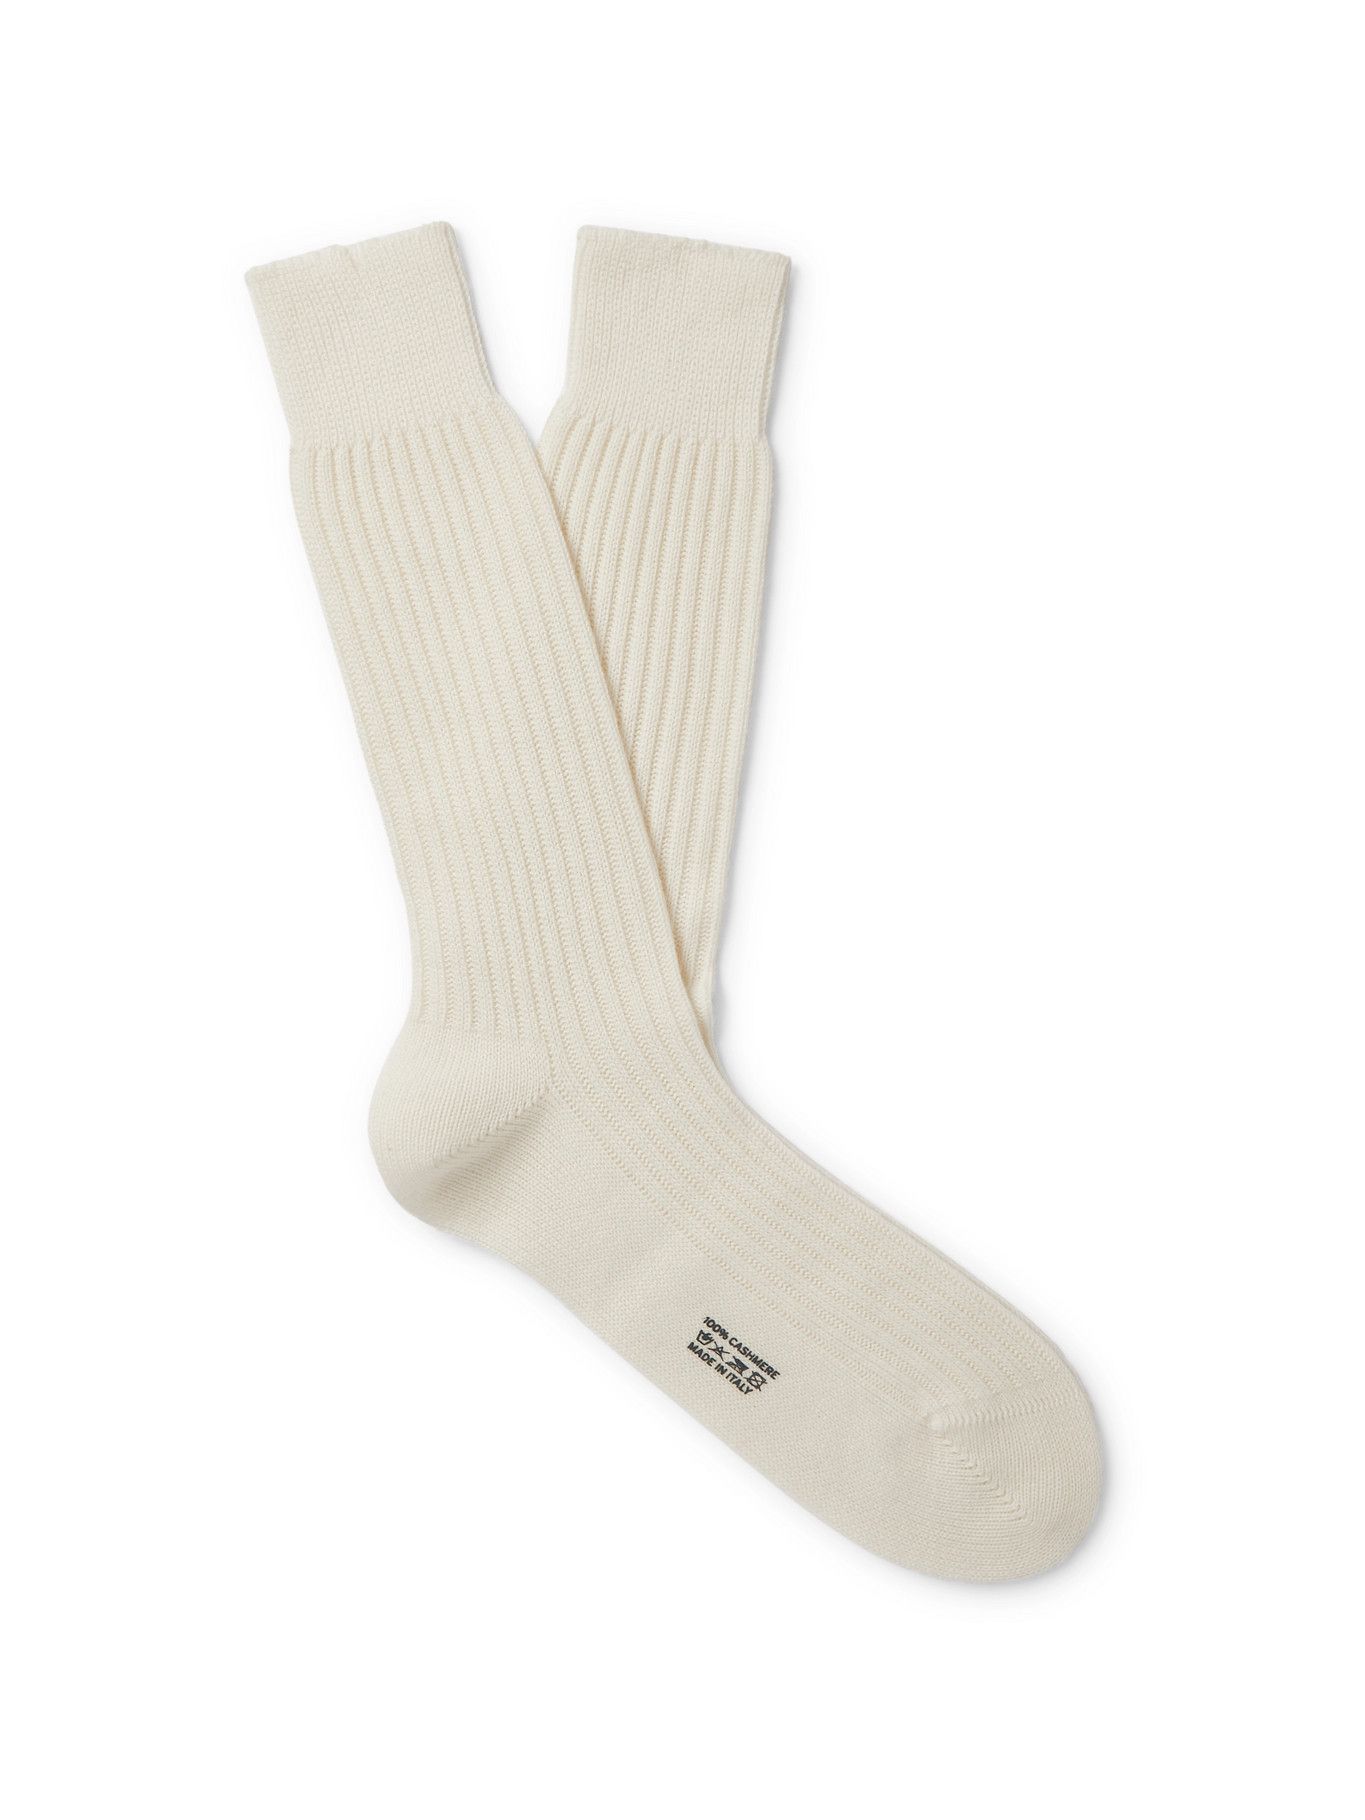 TOM FORD - Ribbed Cotton Socks - White TOM FORD